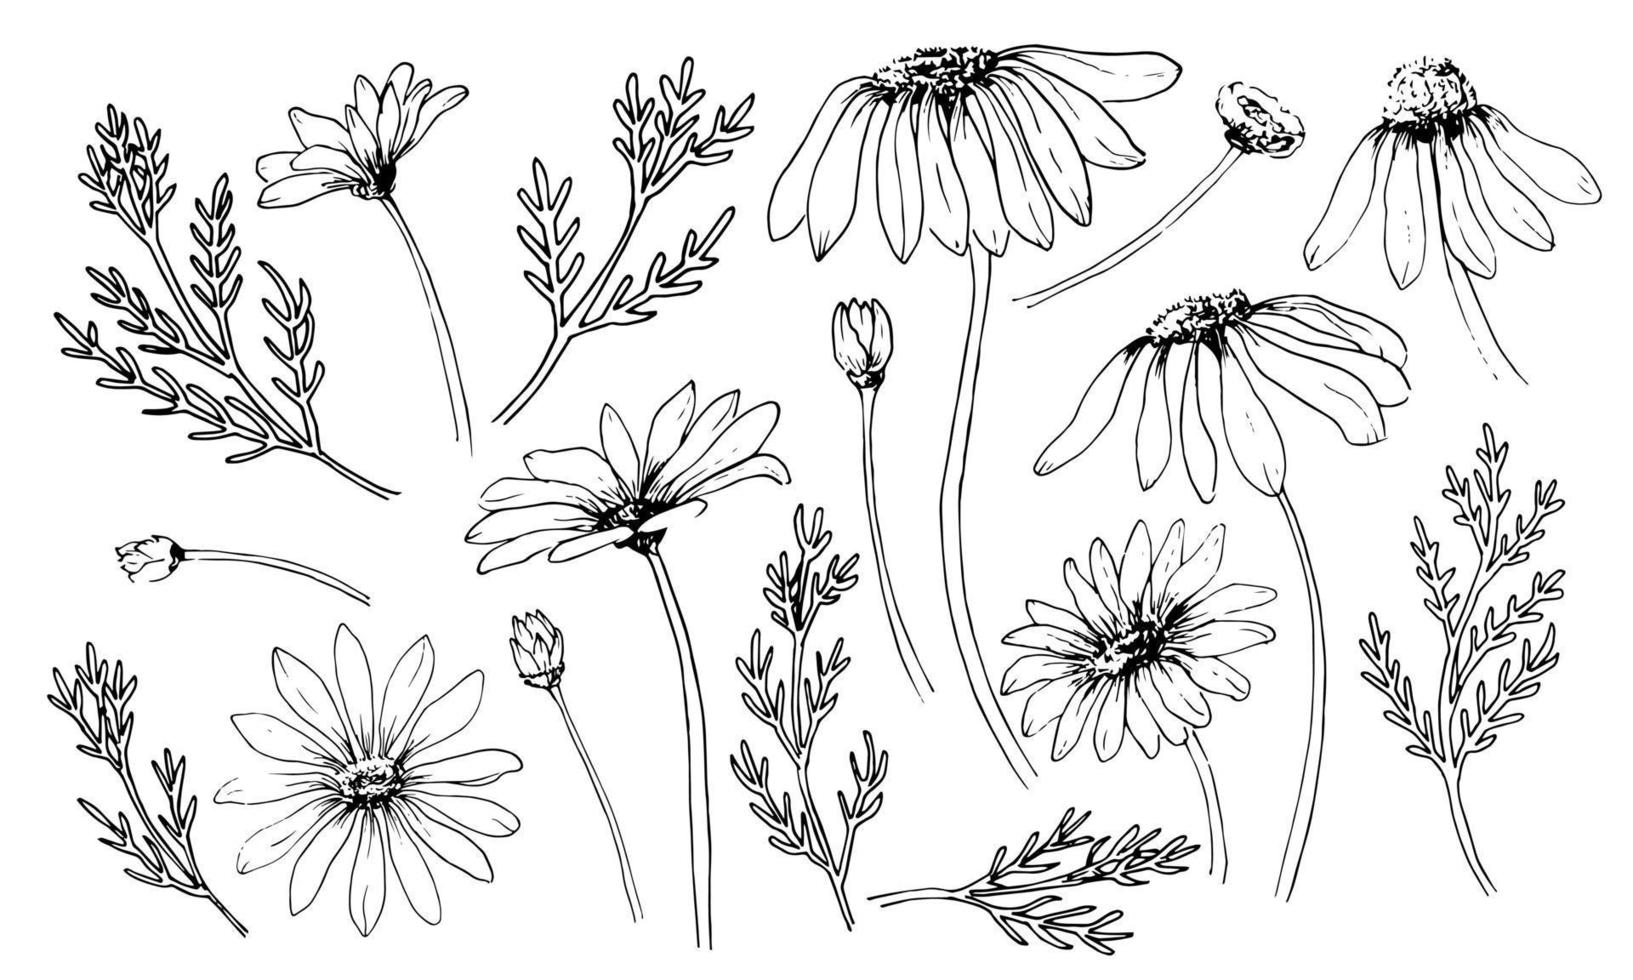 schizzo di set di camomilla. fiori di margherita in fiore incisi. disegno vettoriale disegnato a mano con erbe selvatiche in stile vintage